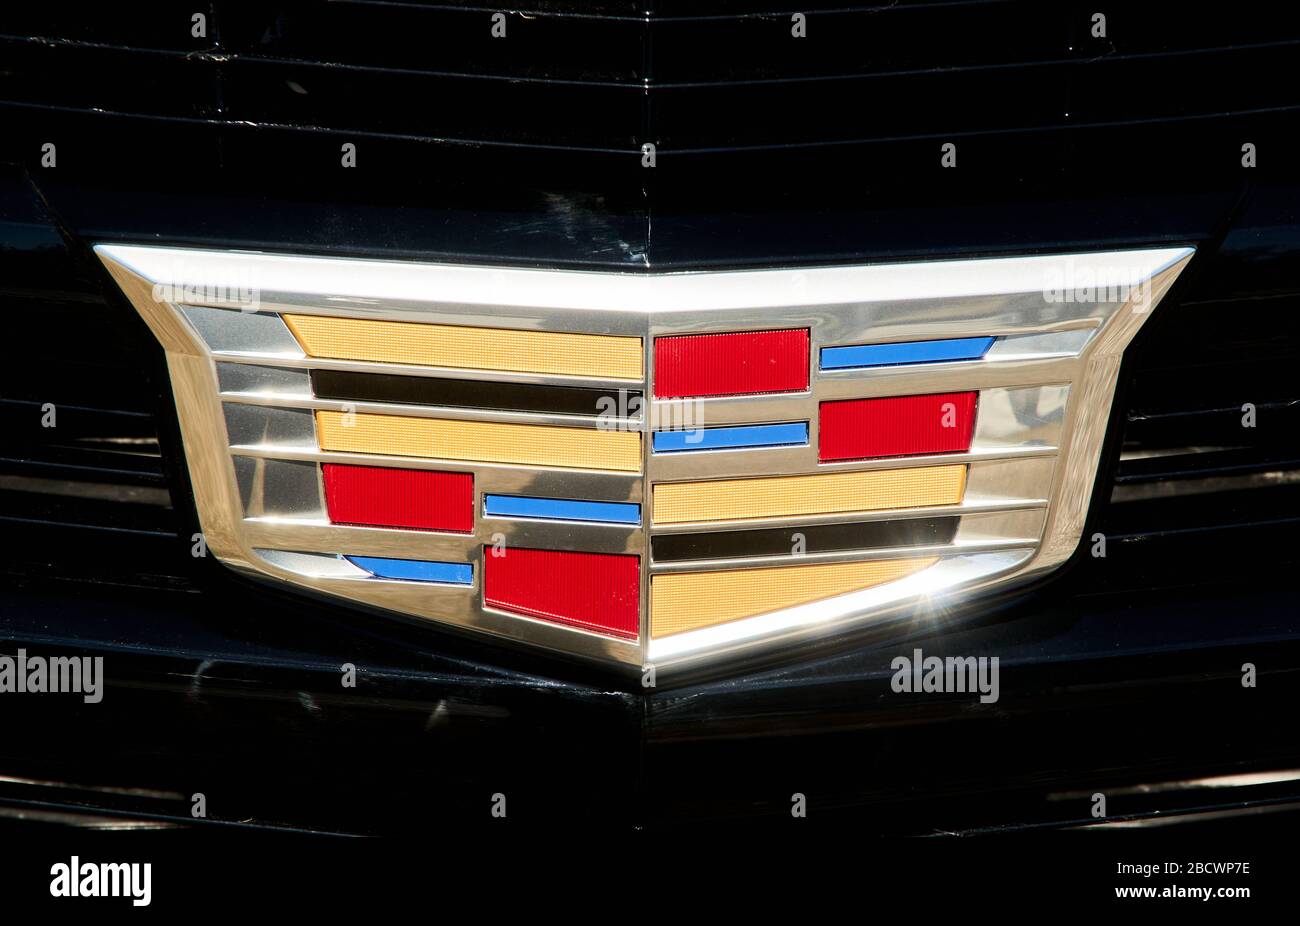 Montréal, Canada - le 4 avril 2020 : fermeture du logo Cadillac. Cadillac est une division du constructeur automobile américain General Motors GM qui desig Banque D'Images